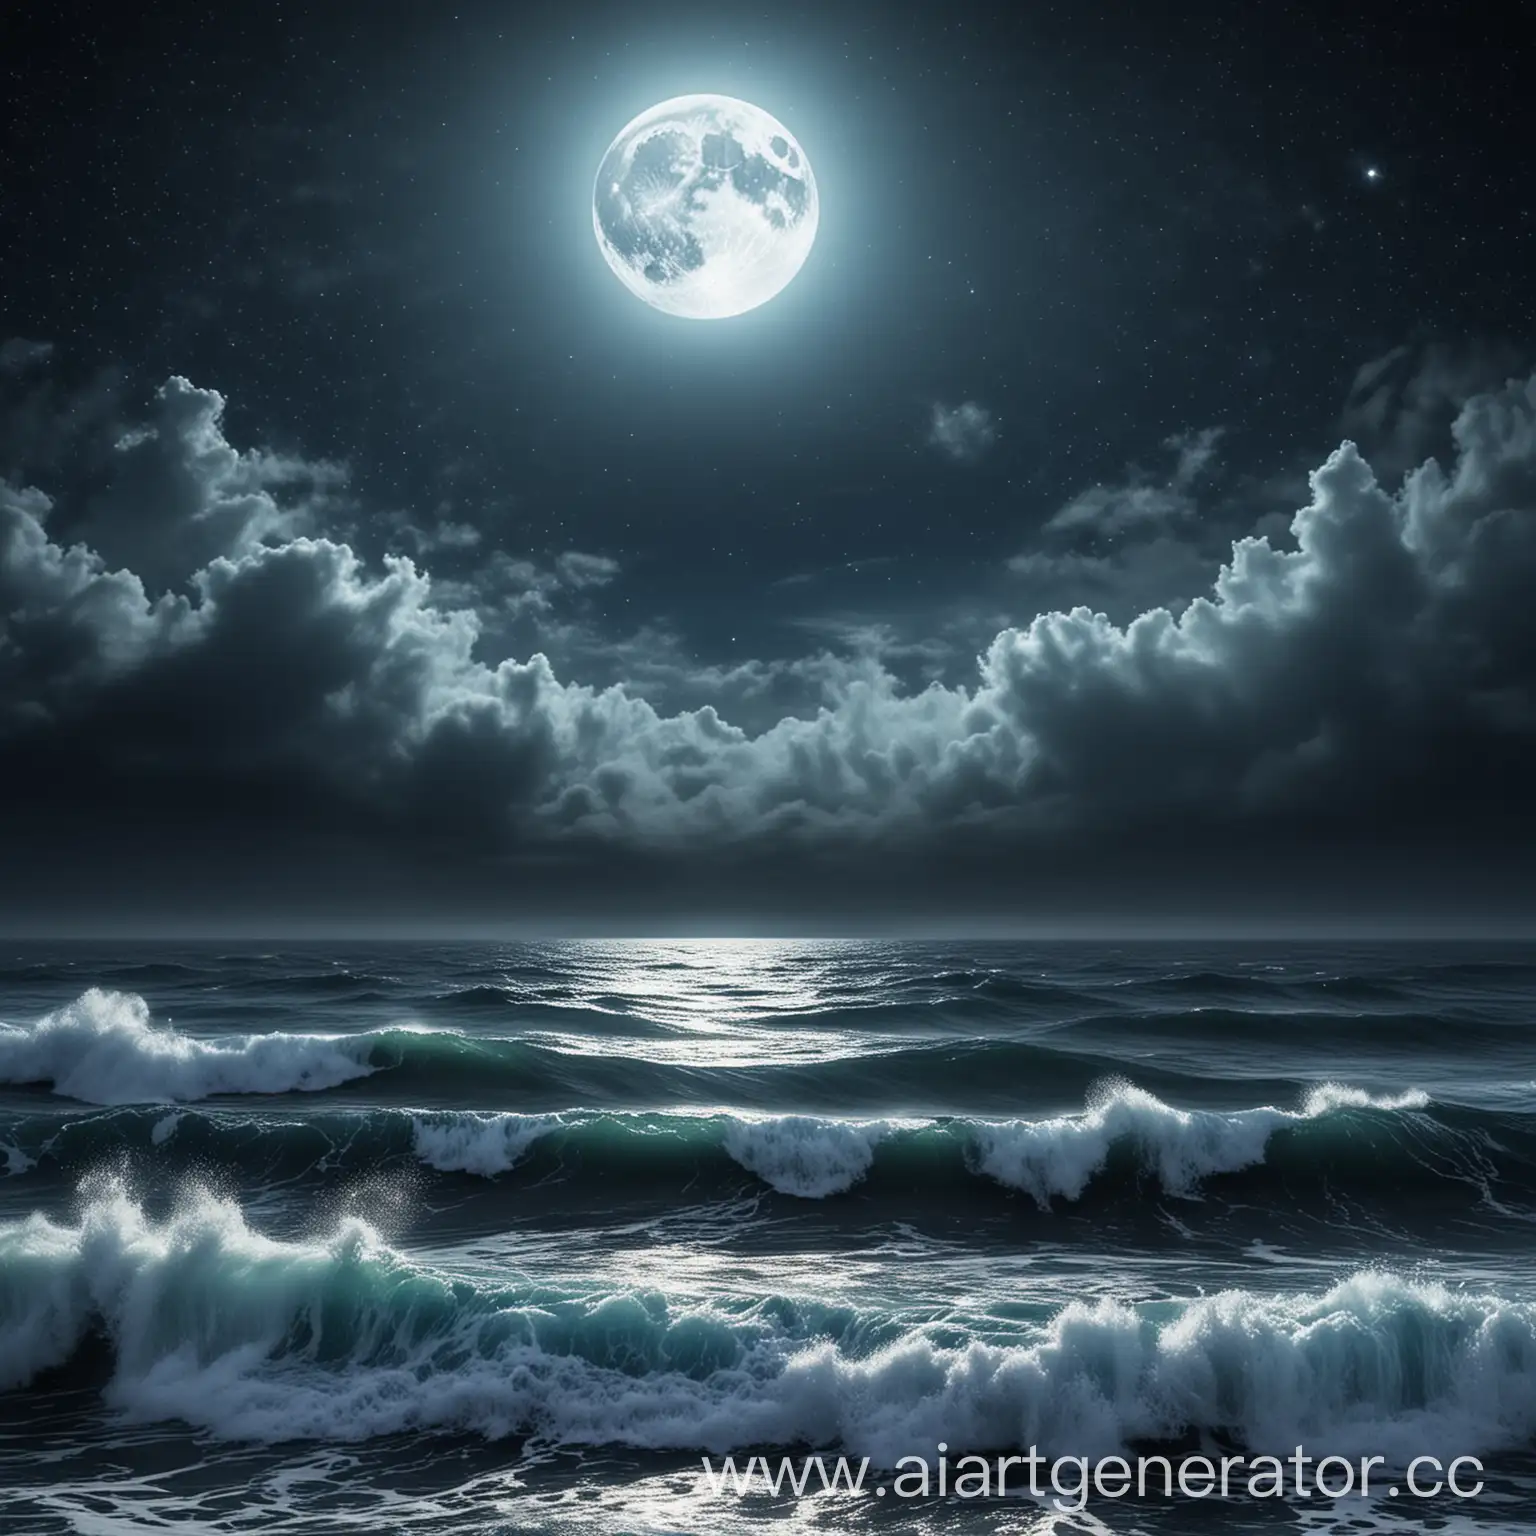 Синее море с большими волнами на фоне черного неба и луны, с яркими звёздами и прозрачным туманом.